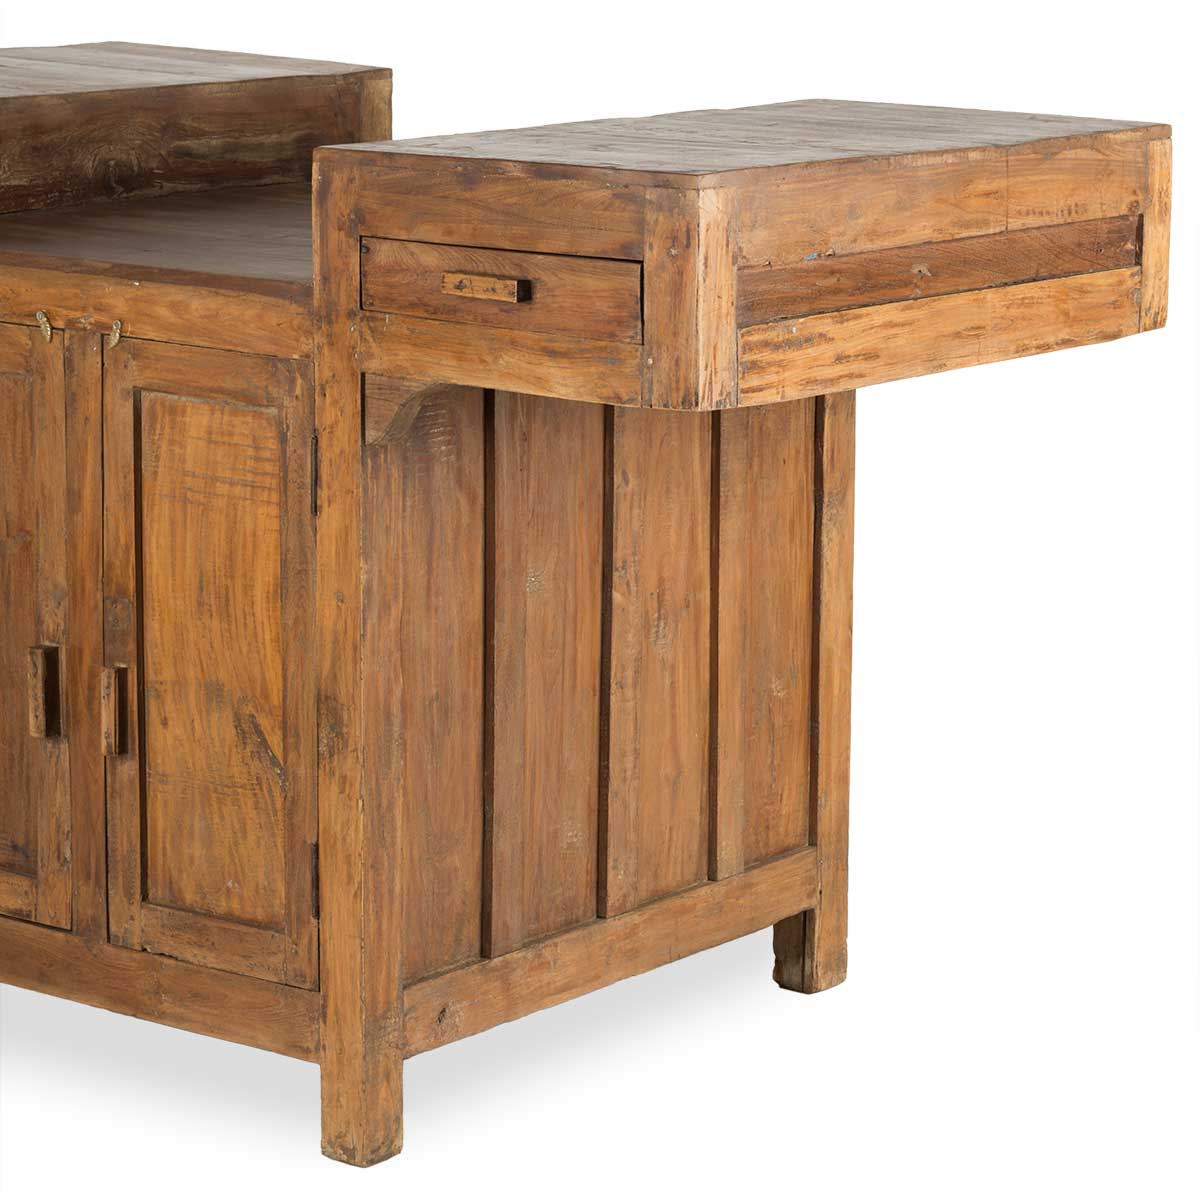 Mueble de madera para almacenaje en locales.